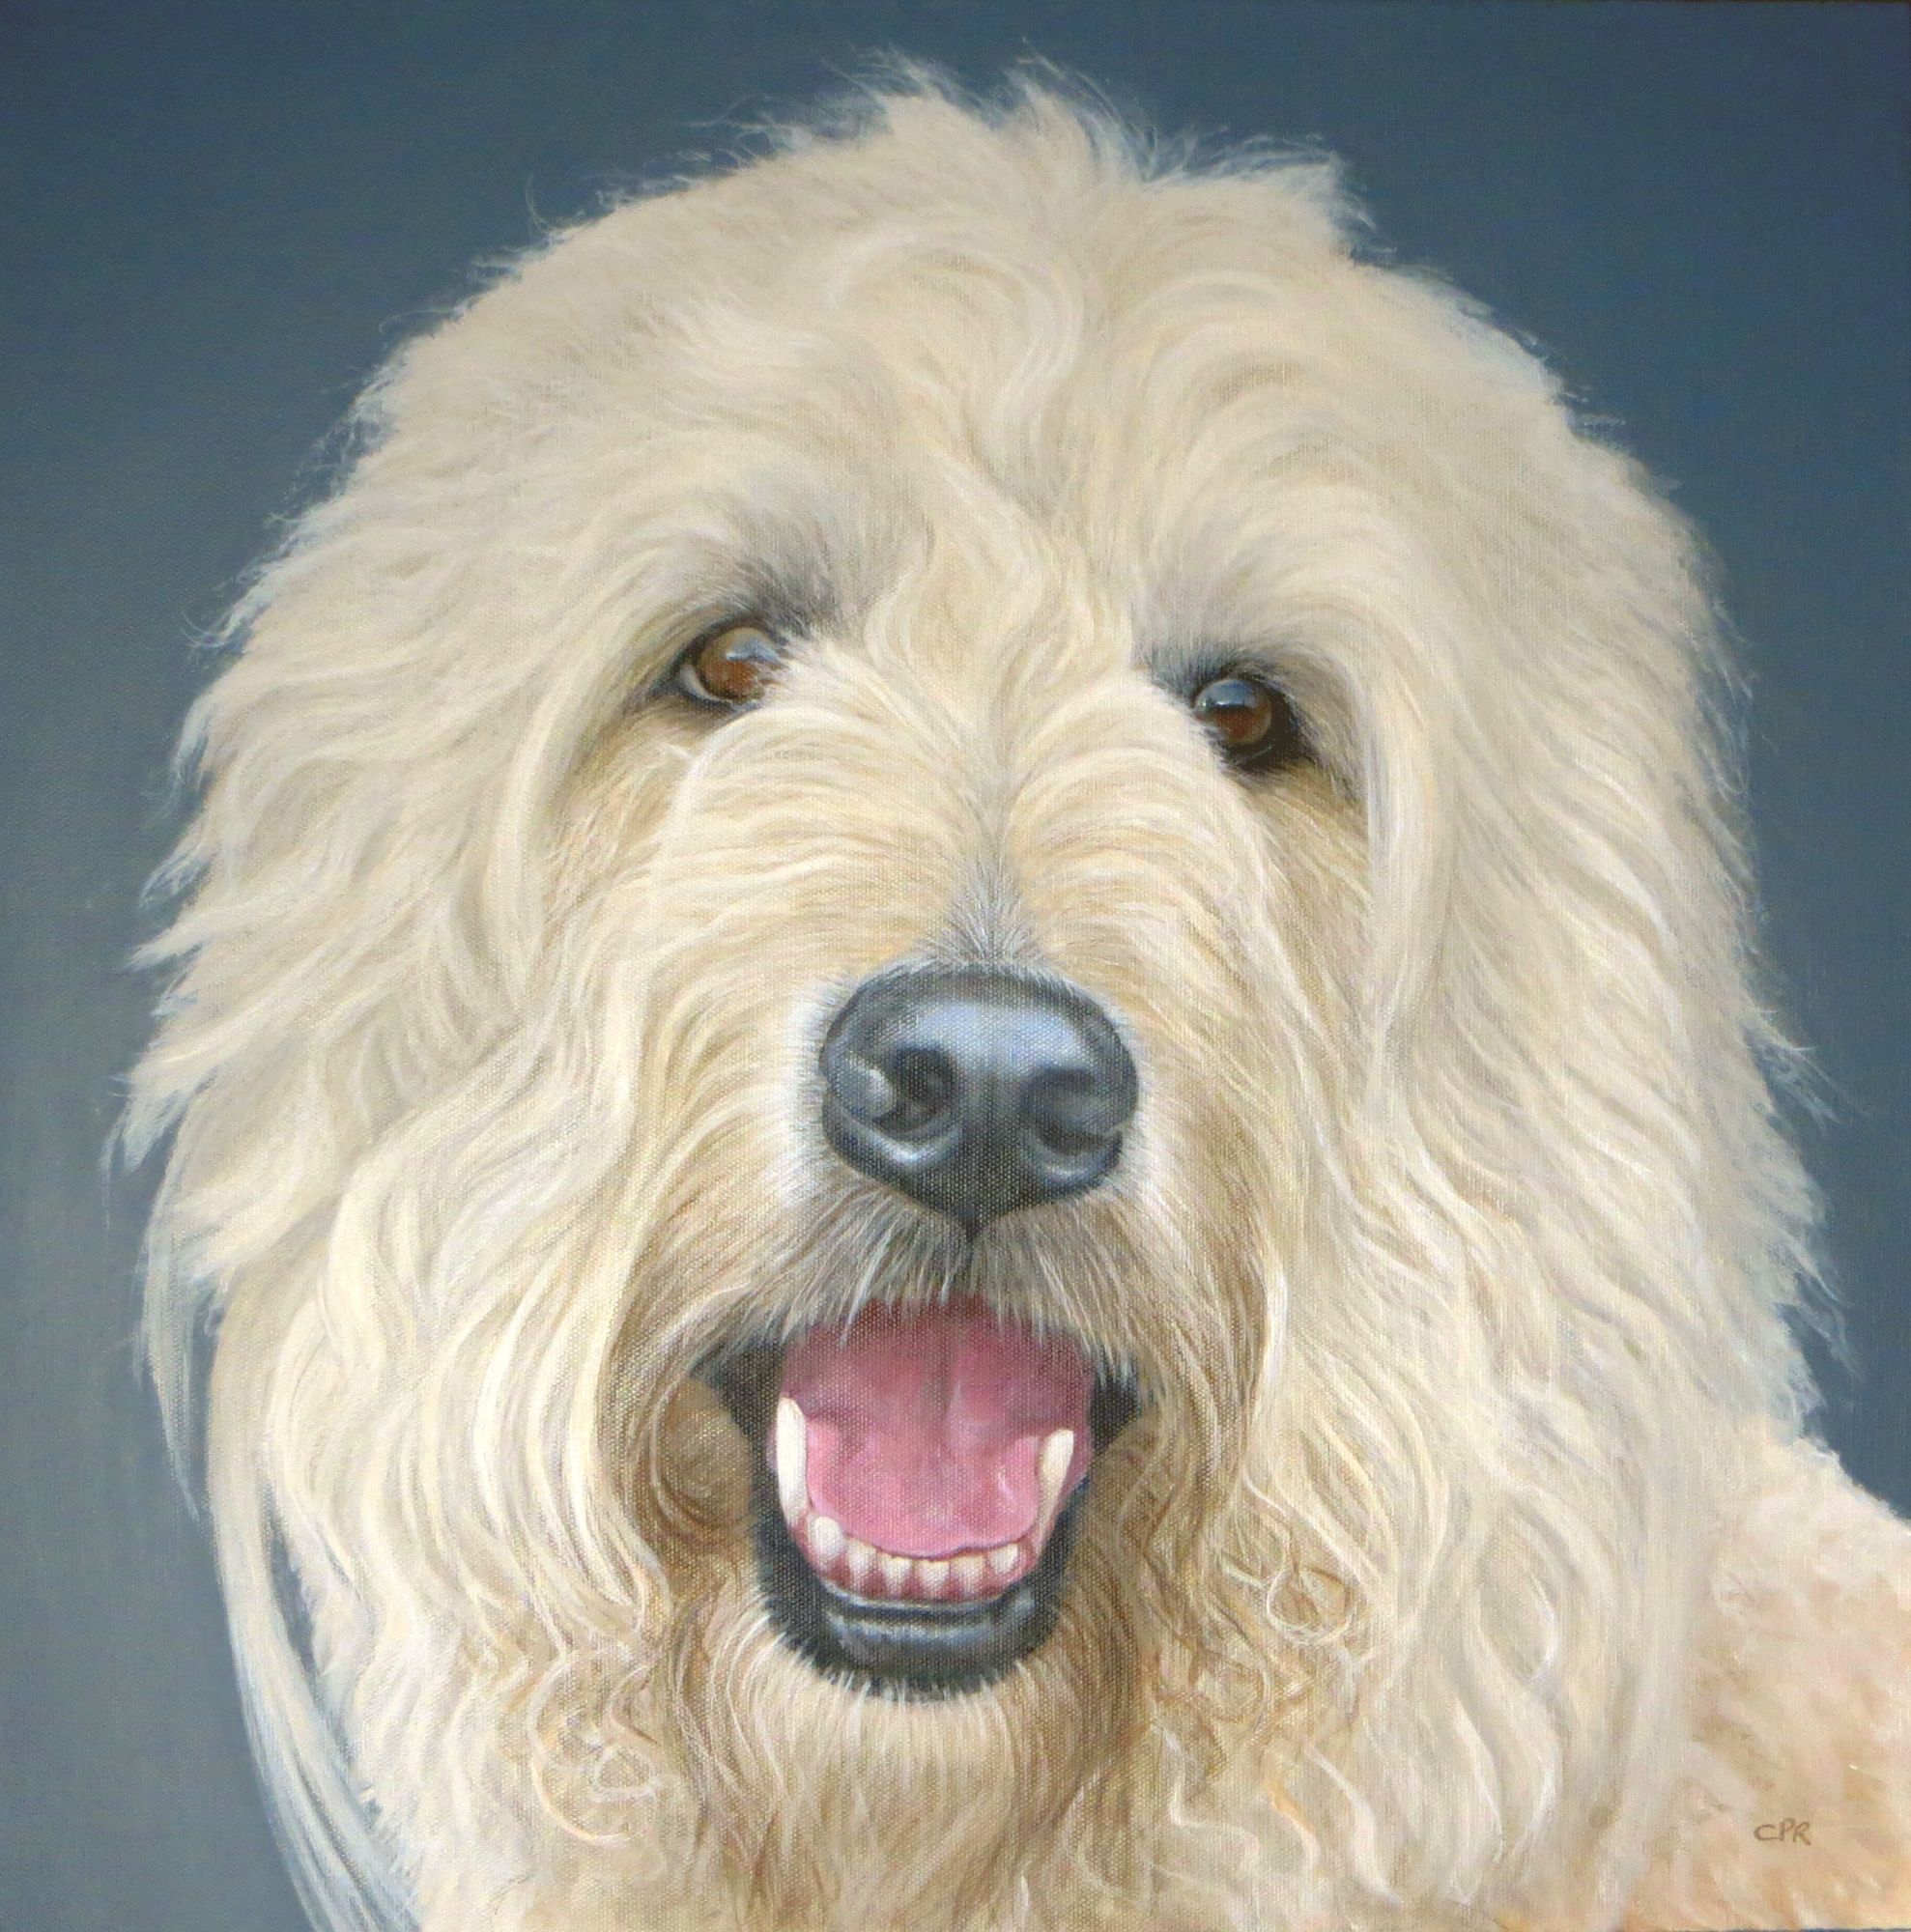 Dog portrait painting